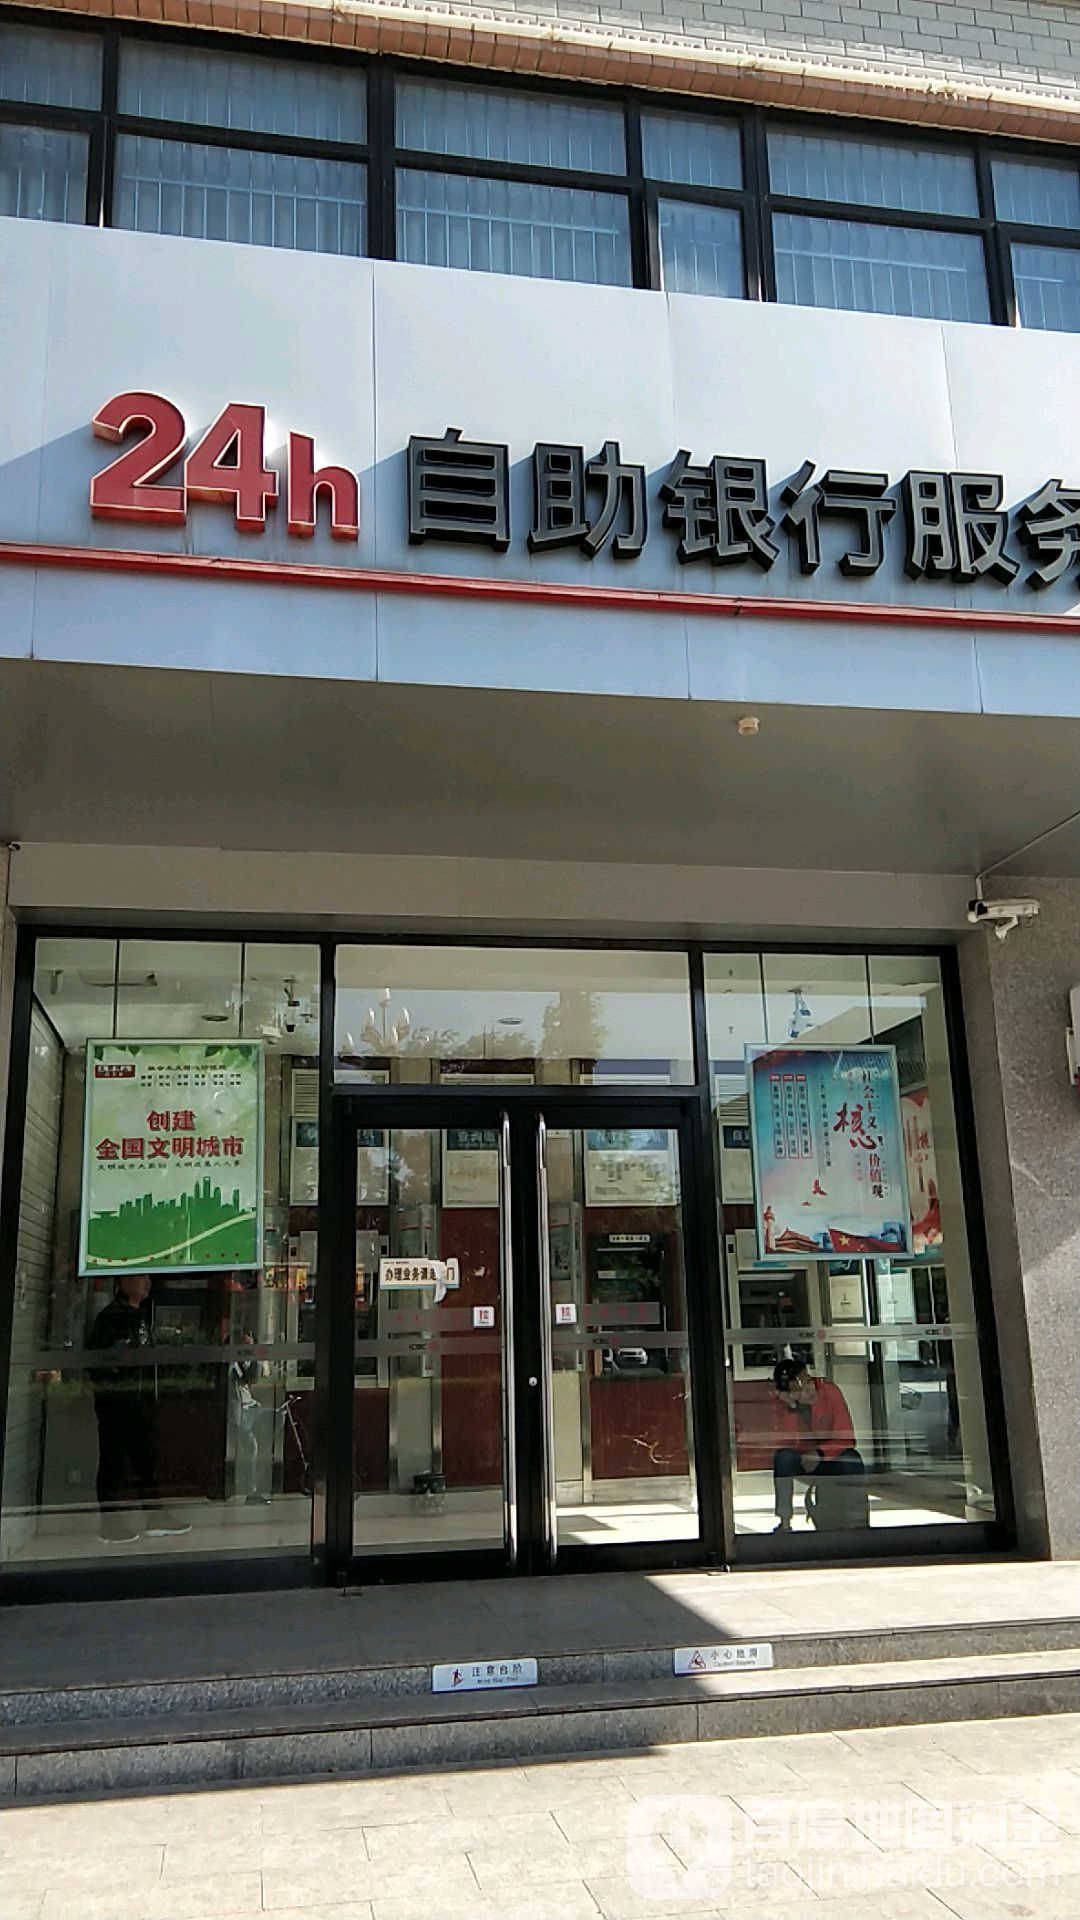 中國工商銀行24小時自助銀行服務(軒轅路店)